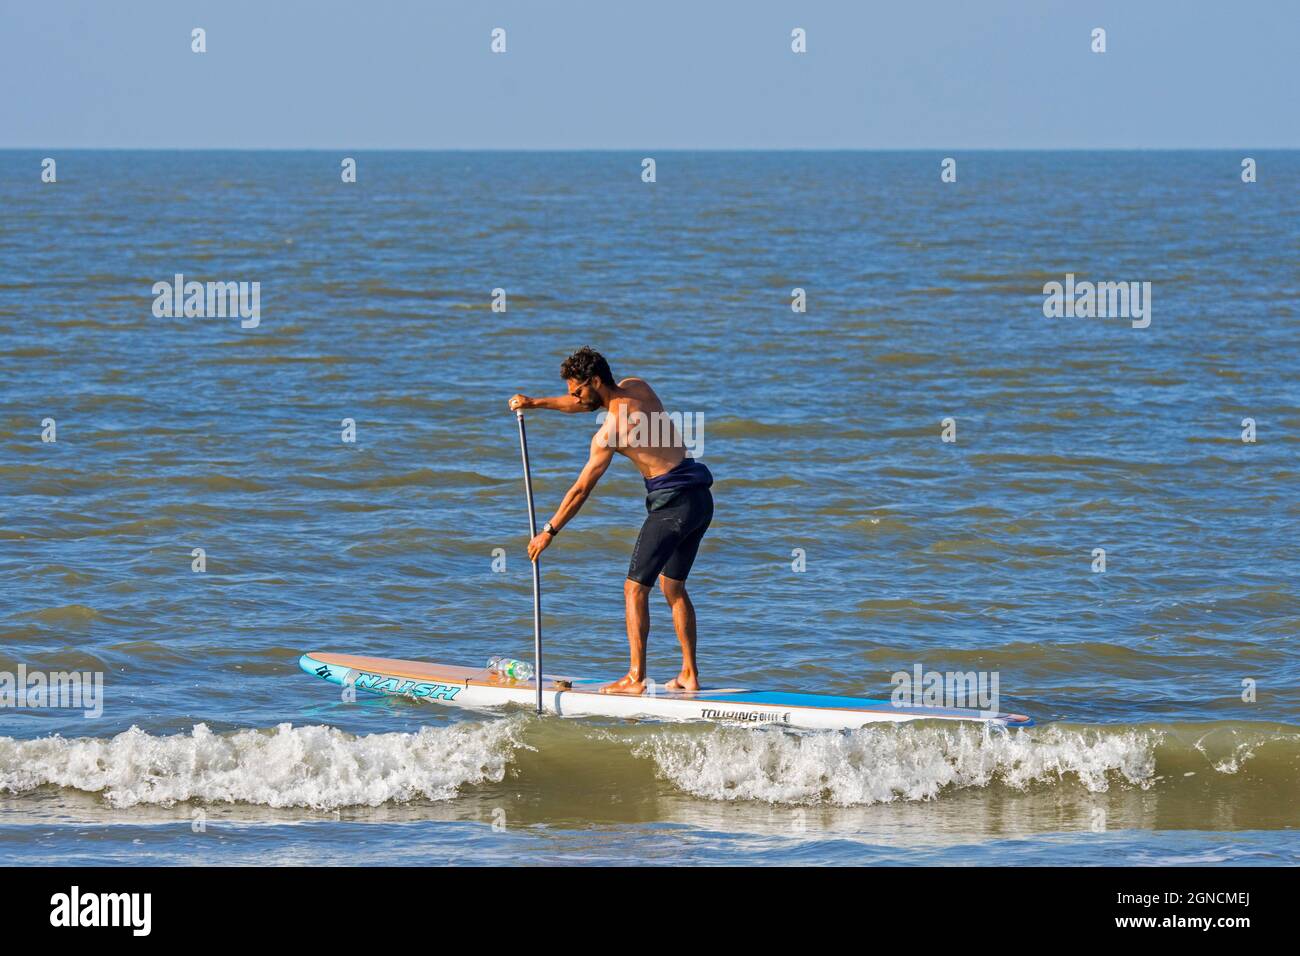 Paddleboard masculino practicando el surf de remo de deportes acuáticos / stand up paddle boarding / SUP a lo largo de la costa del Mar del Norte Foto de stock